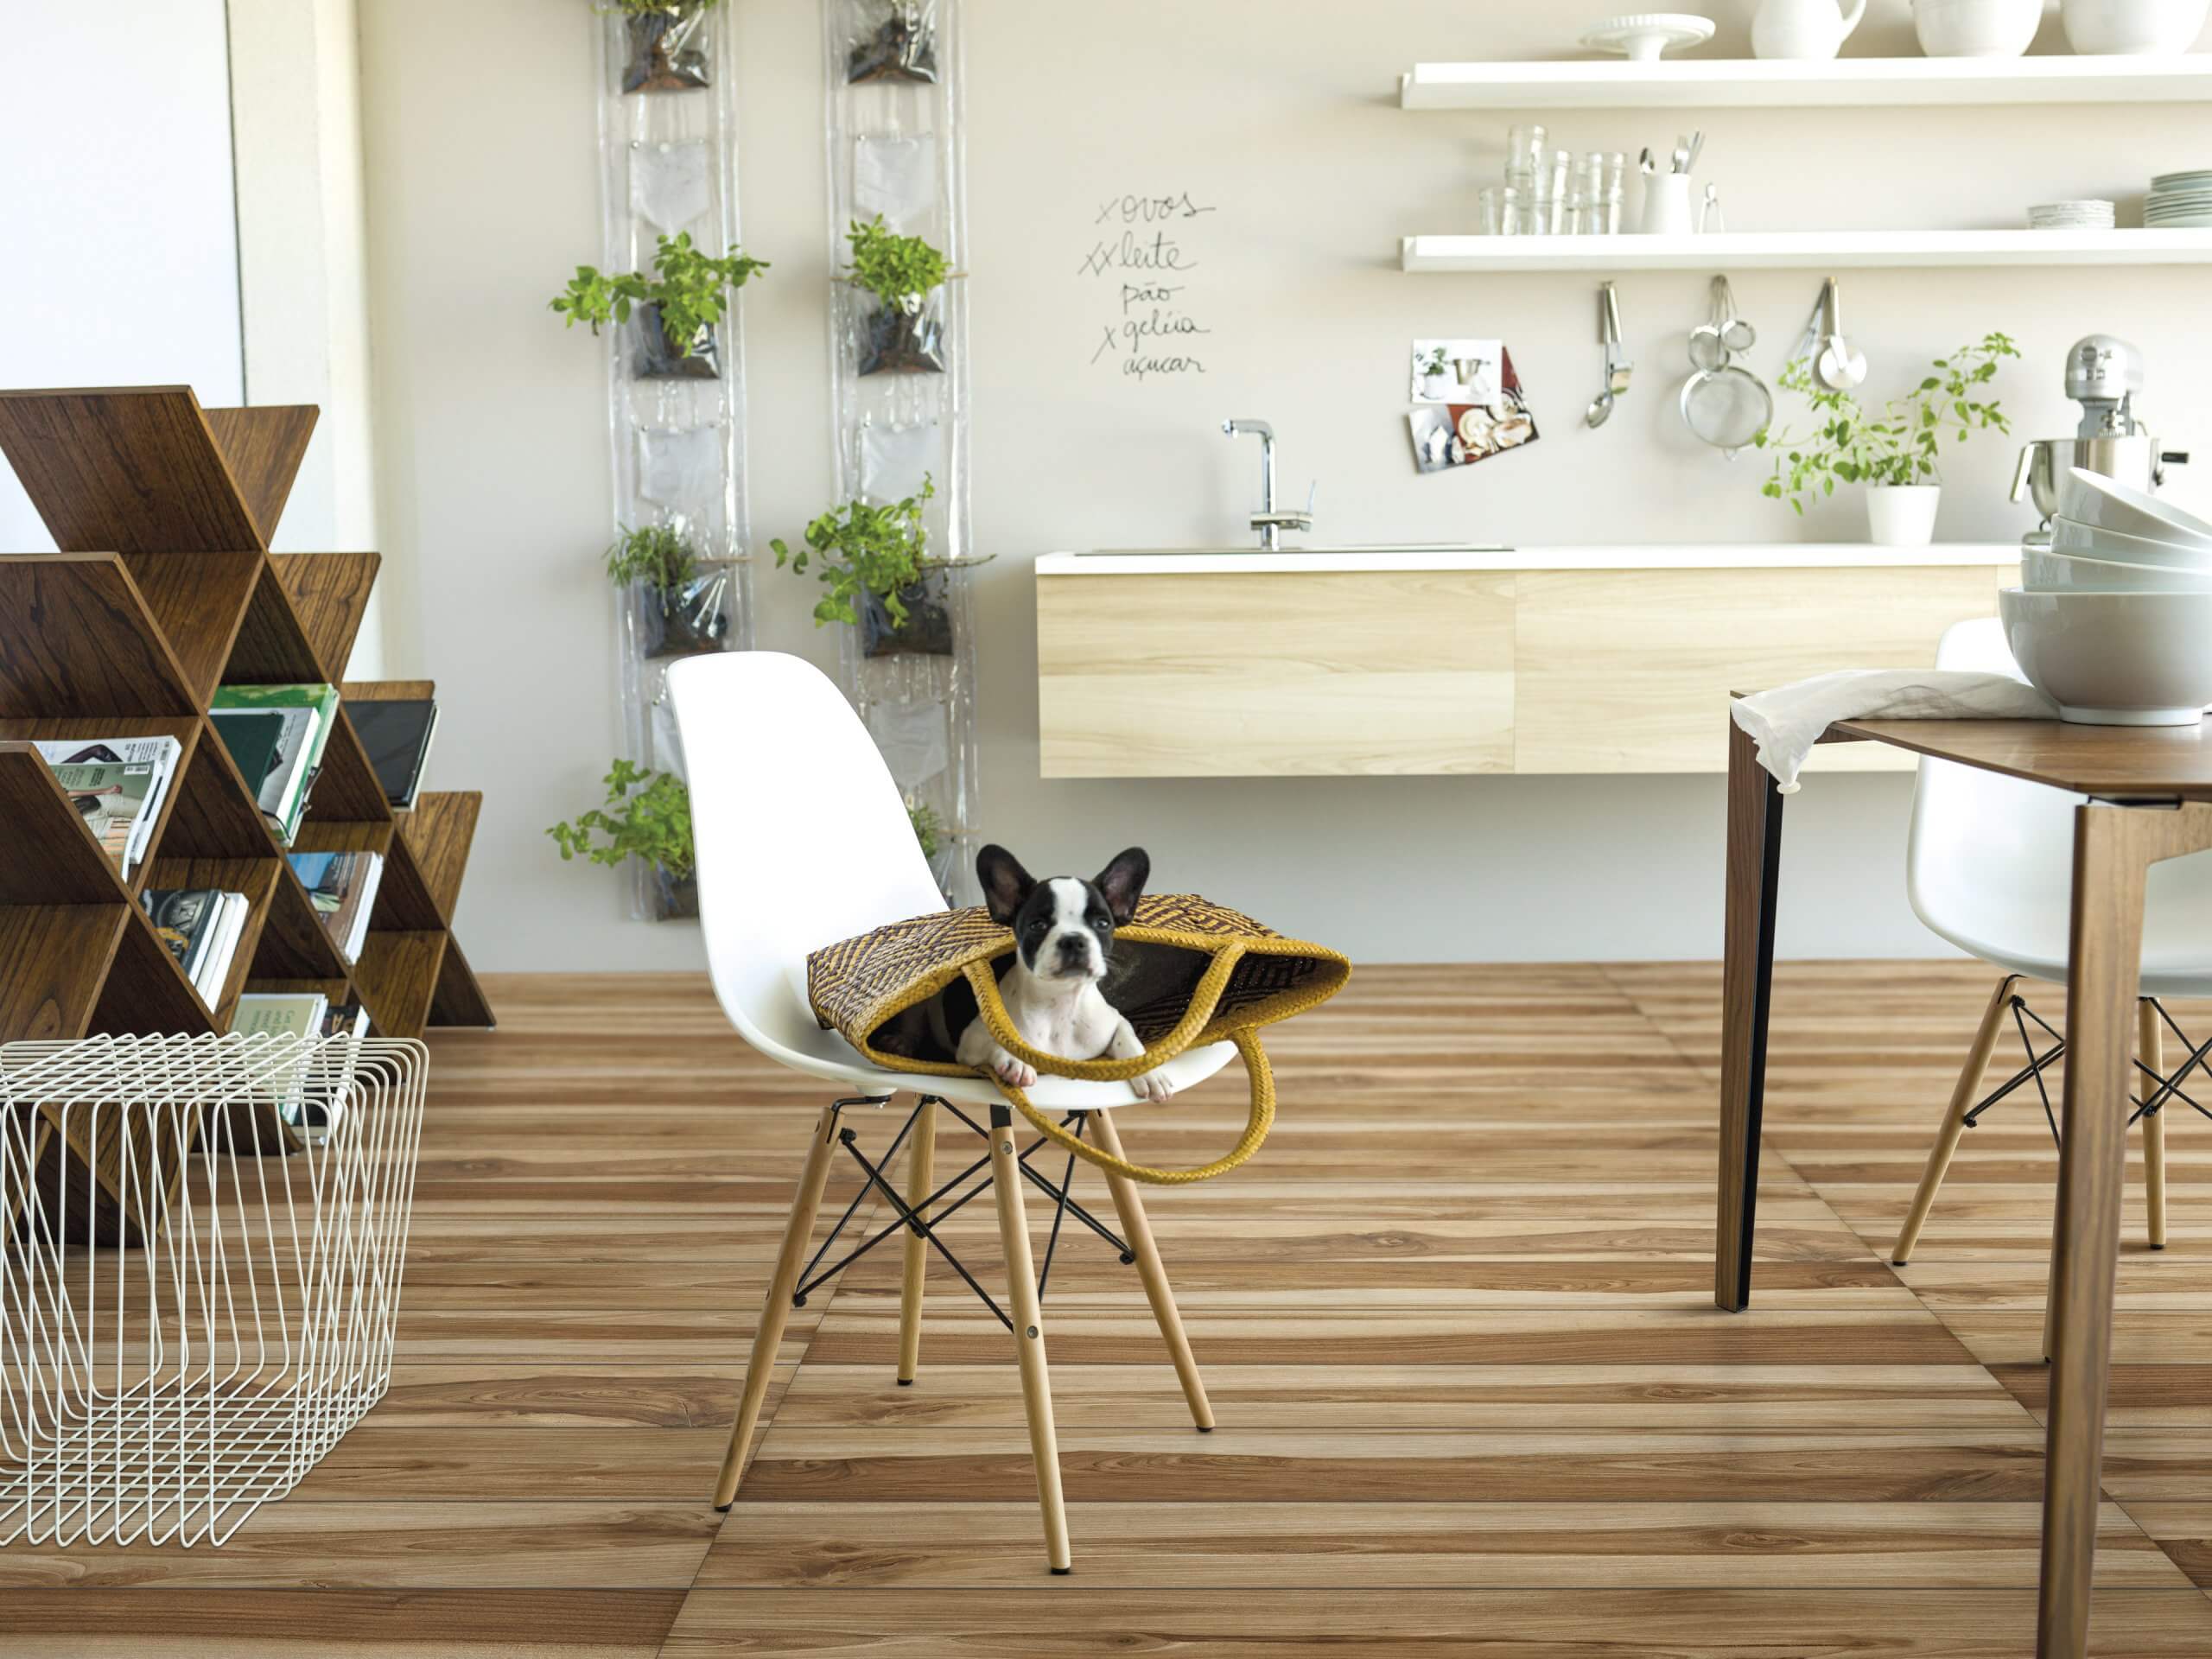 ambiente Pet Friendly na cozinha com cerâmica que representa madeira